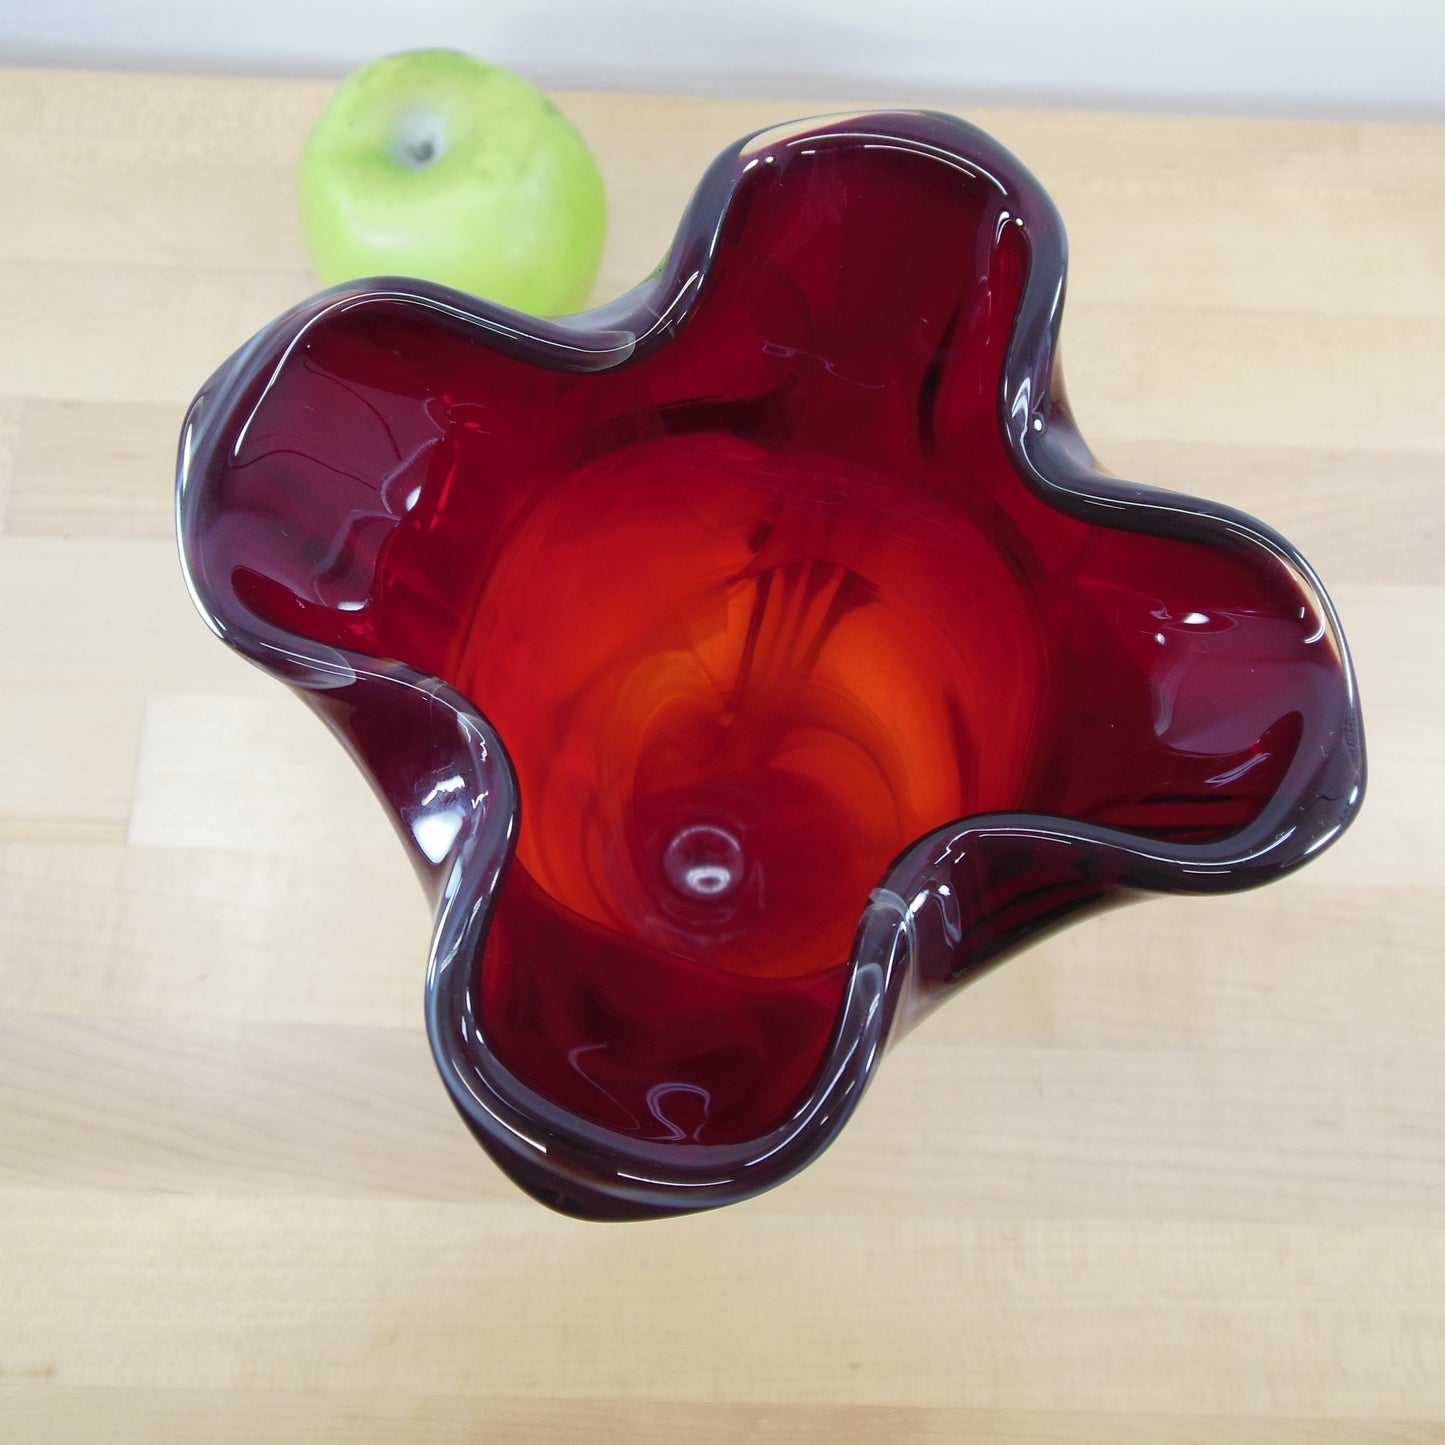 Imperial Ruby Red Multi-Color Slag Glass Pedestal Vase 9.5"